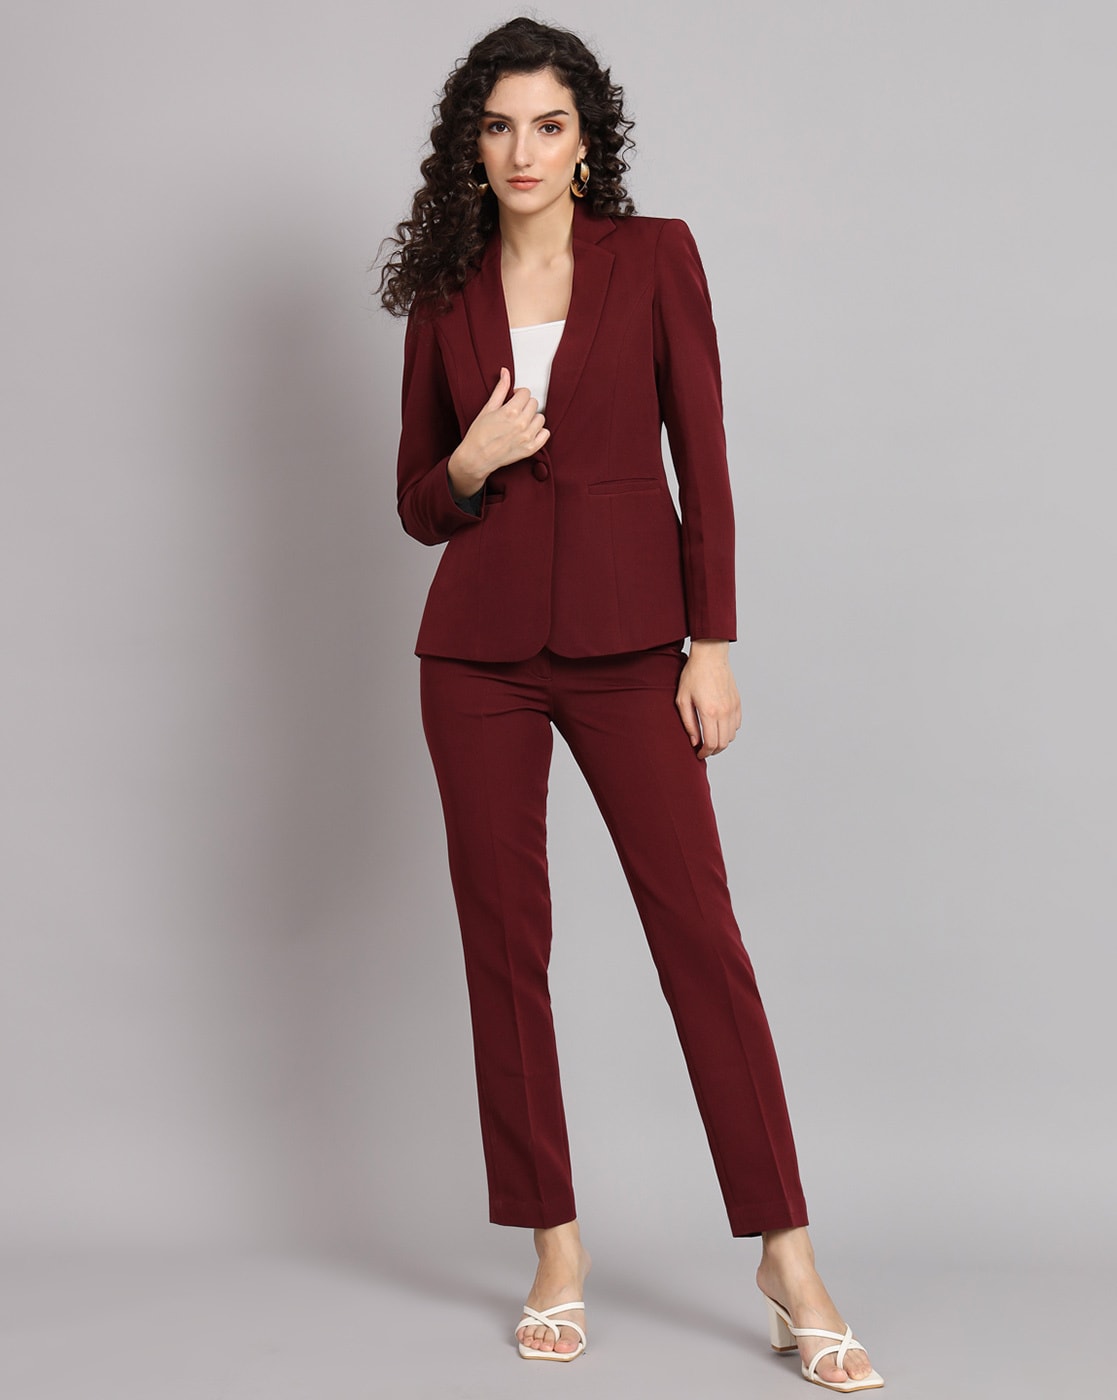 Burgundy Women's Pantsuit, Three Piece Suit, Jacket With Pants, Wedding Suit,  Formal Women's Suit - Etsy